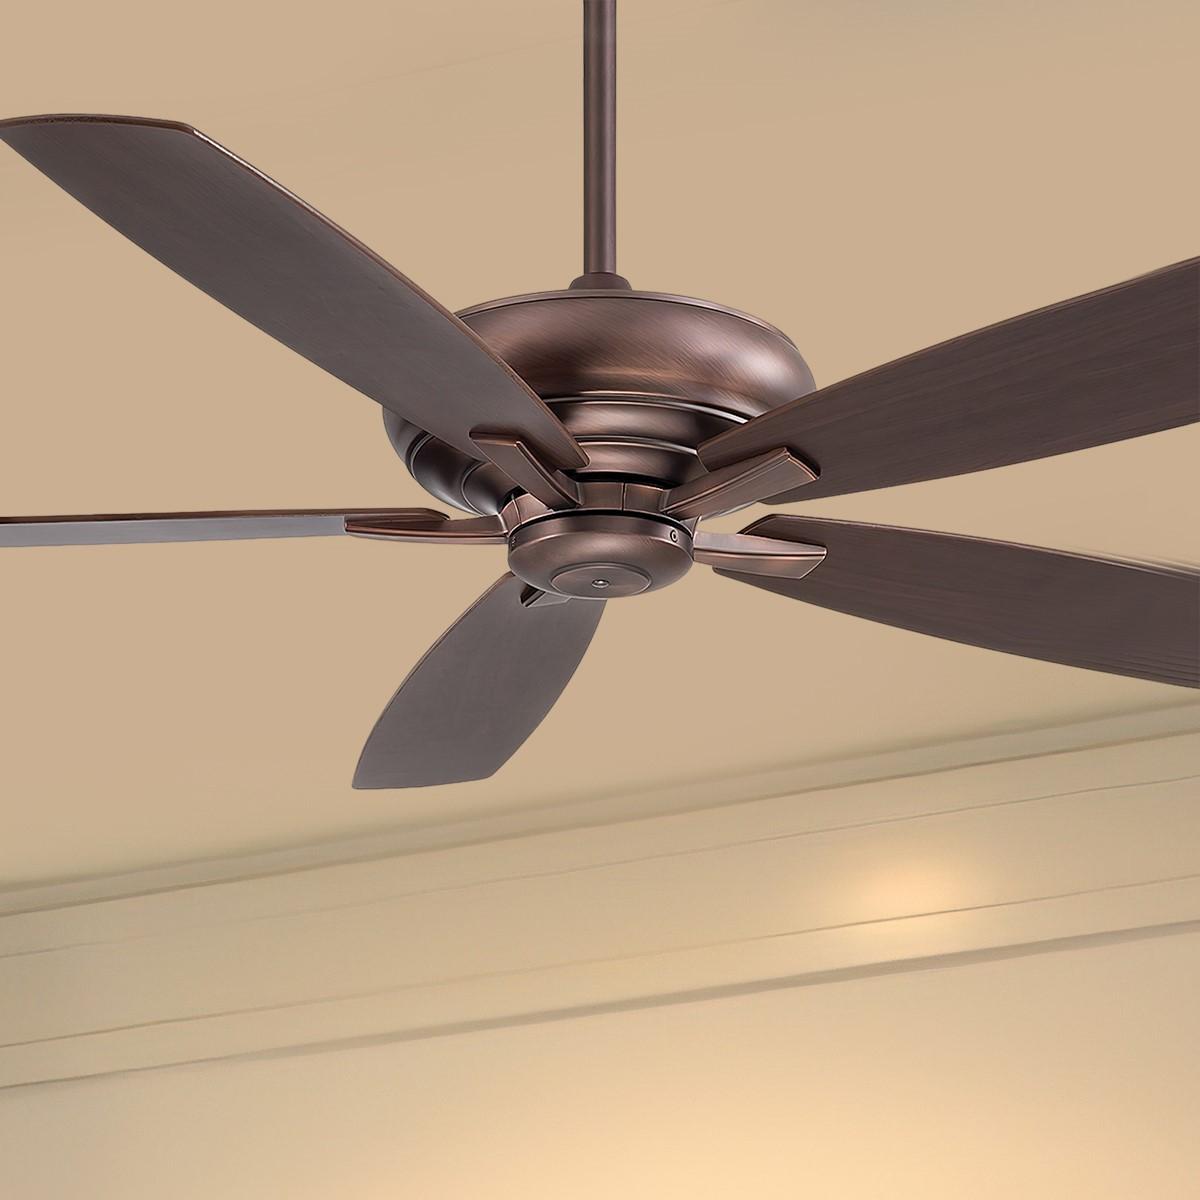 Kola XL 60 Inch Ceiling Fan With Remote, Dark Brushed Bronze with Dark Maple/Dark Walnut Blades